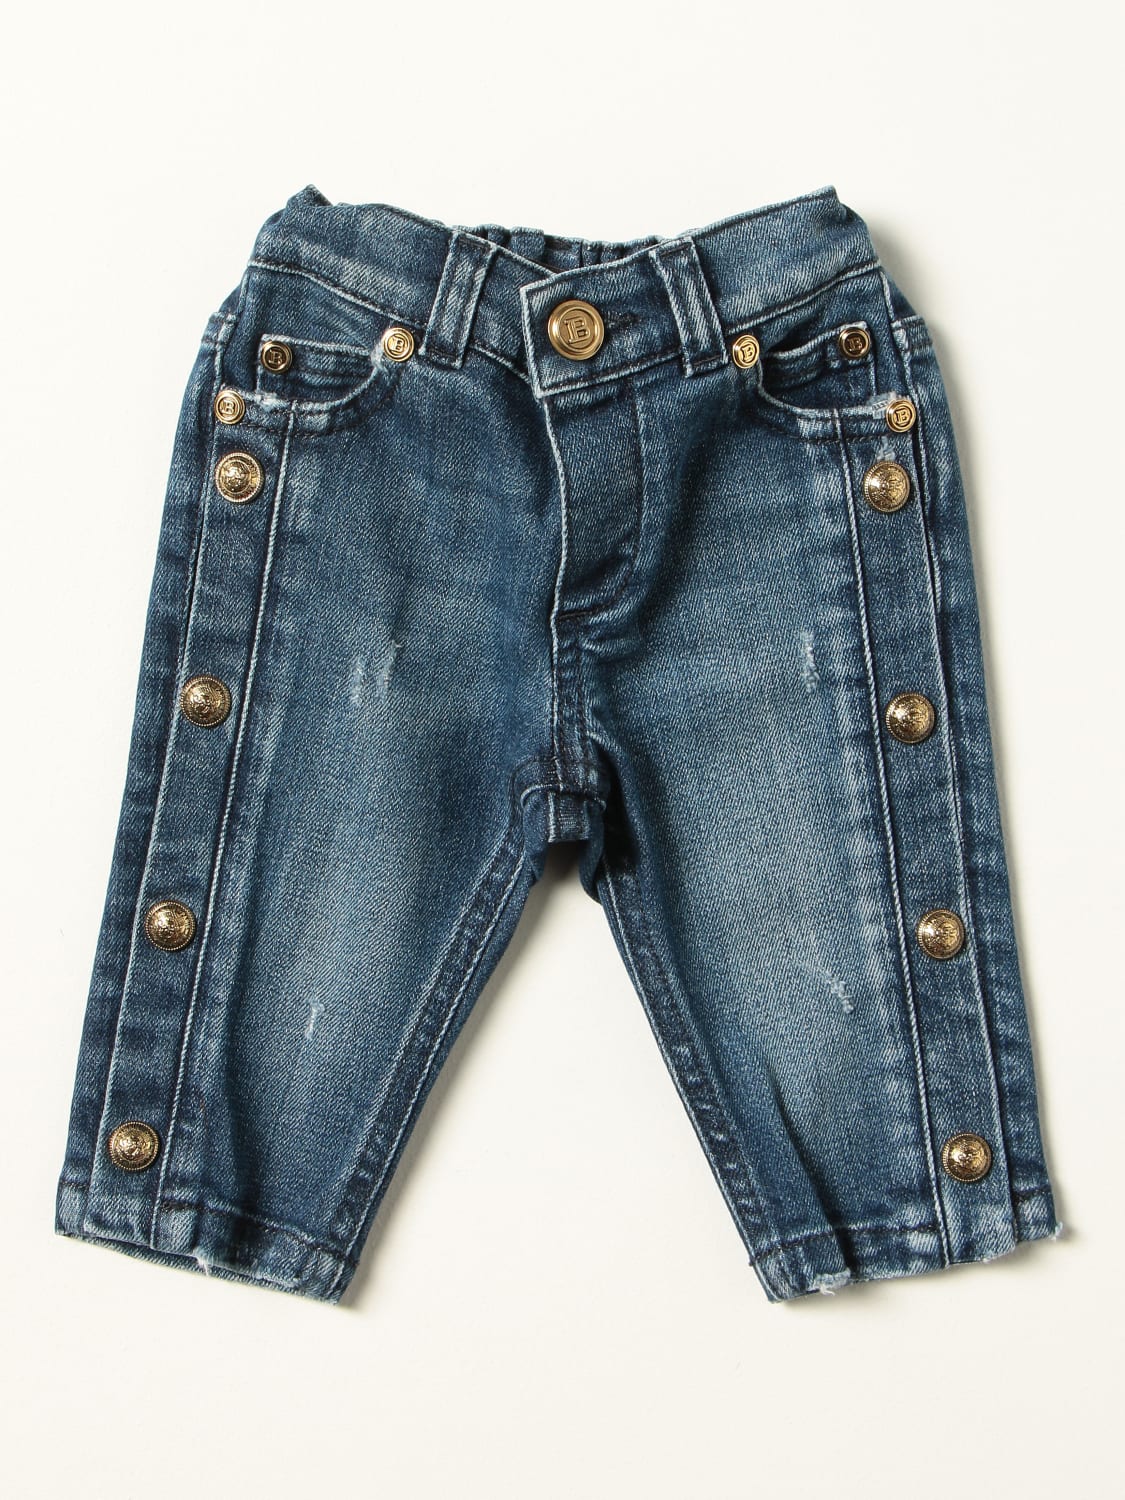 designer Fremskridt Forbipasserende Balmain Outlet: 5-pocket jeans with metal buttons - Denim | Balmain jeans  6P6850D0004 online on GIGLIO.COM